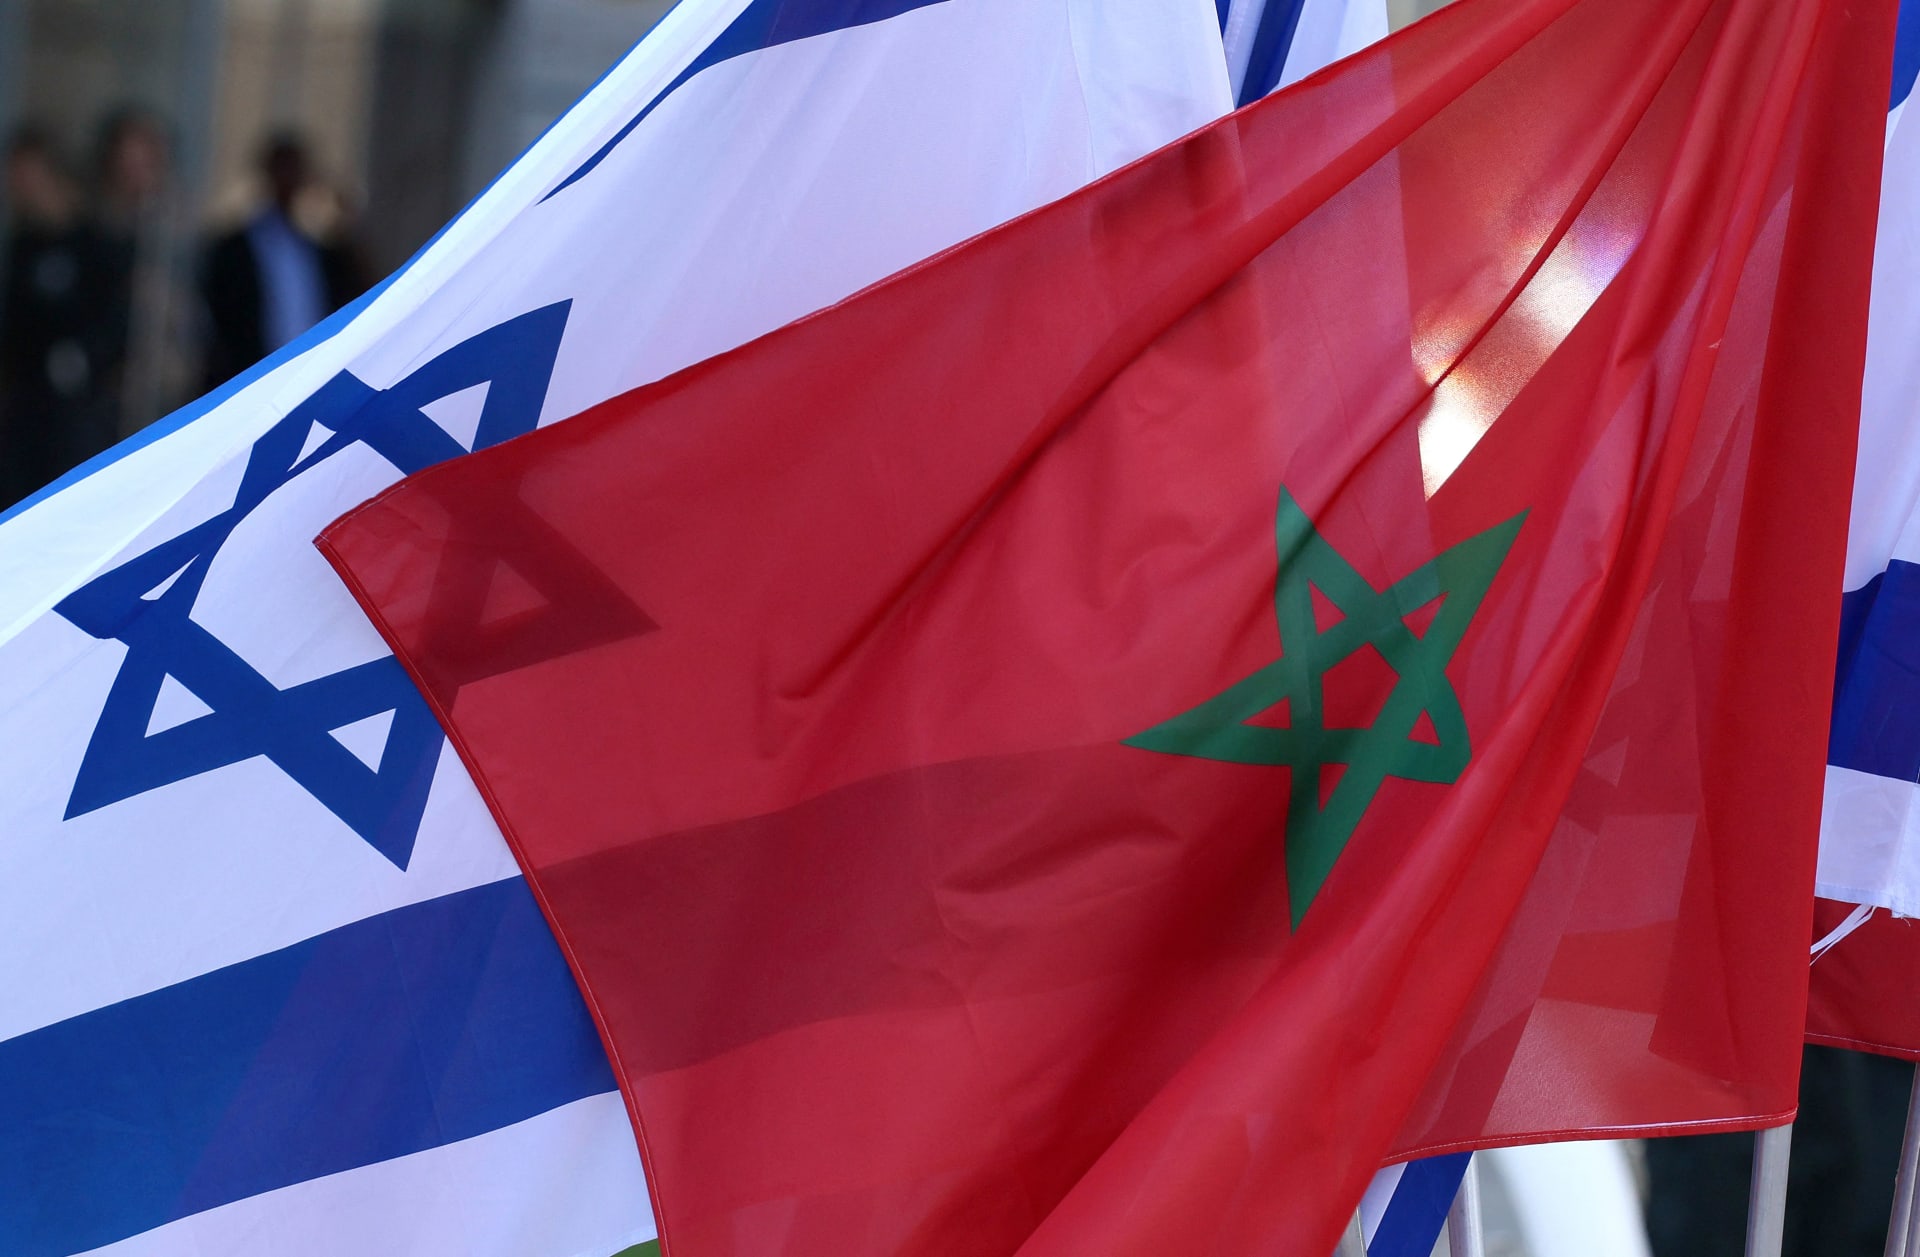 بعد استدعائه للتحقيق بقضايا "تحرش جنسي" وغيرها.. سفير إسرائيل في المغرب: "ادعاءات كاذبة"